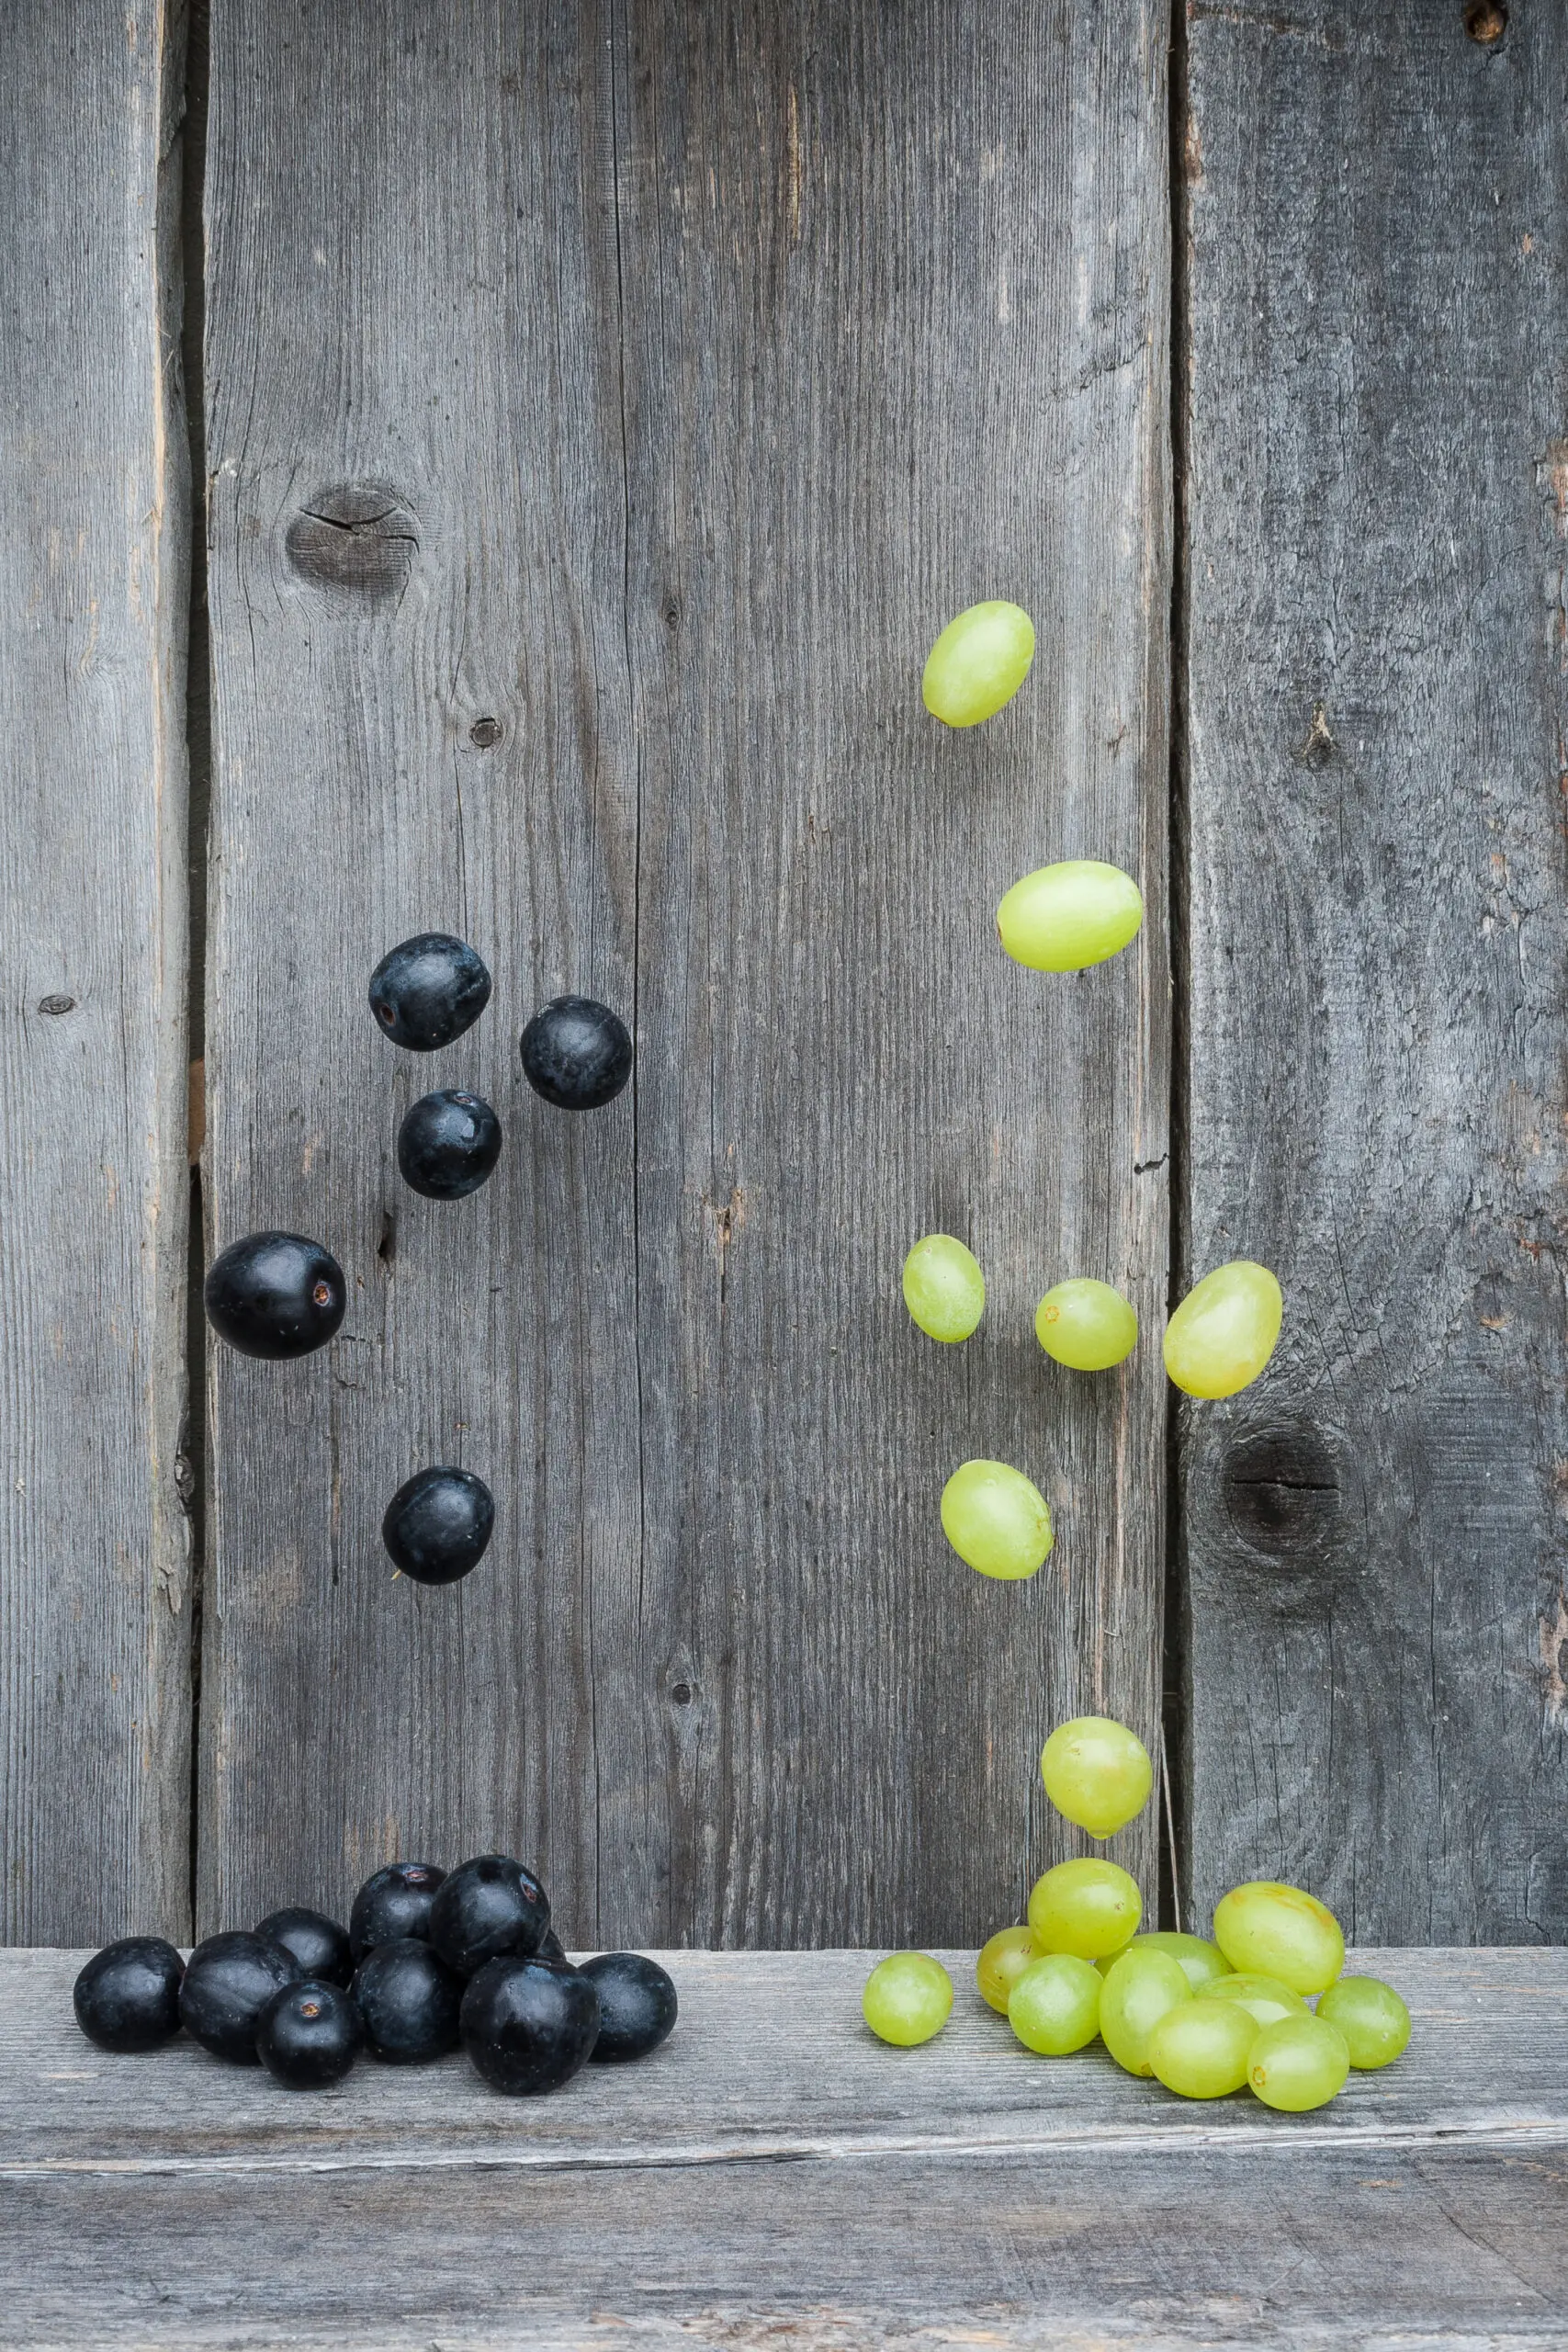 Wandbild (3397) Springende Weintrauben präsentiert: Stillleben,Essen und Getränke,Surrealisch